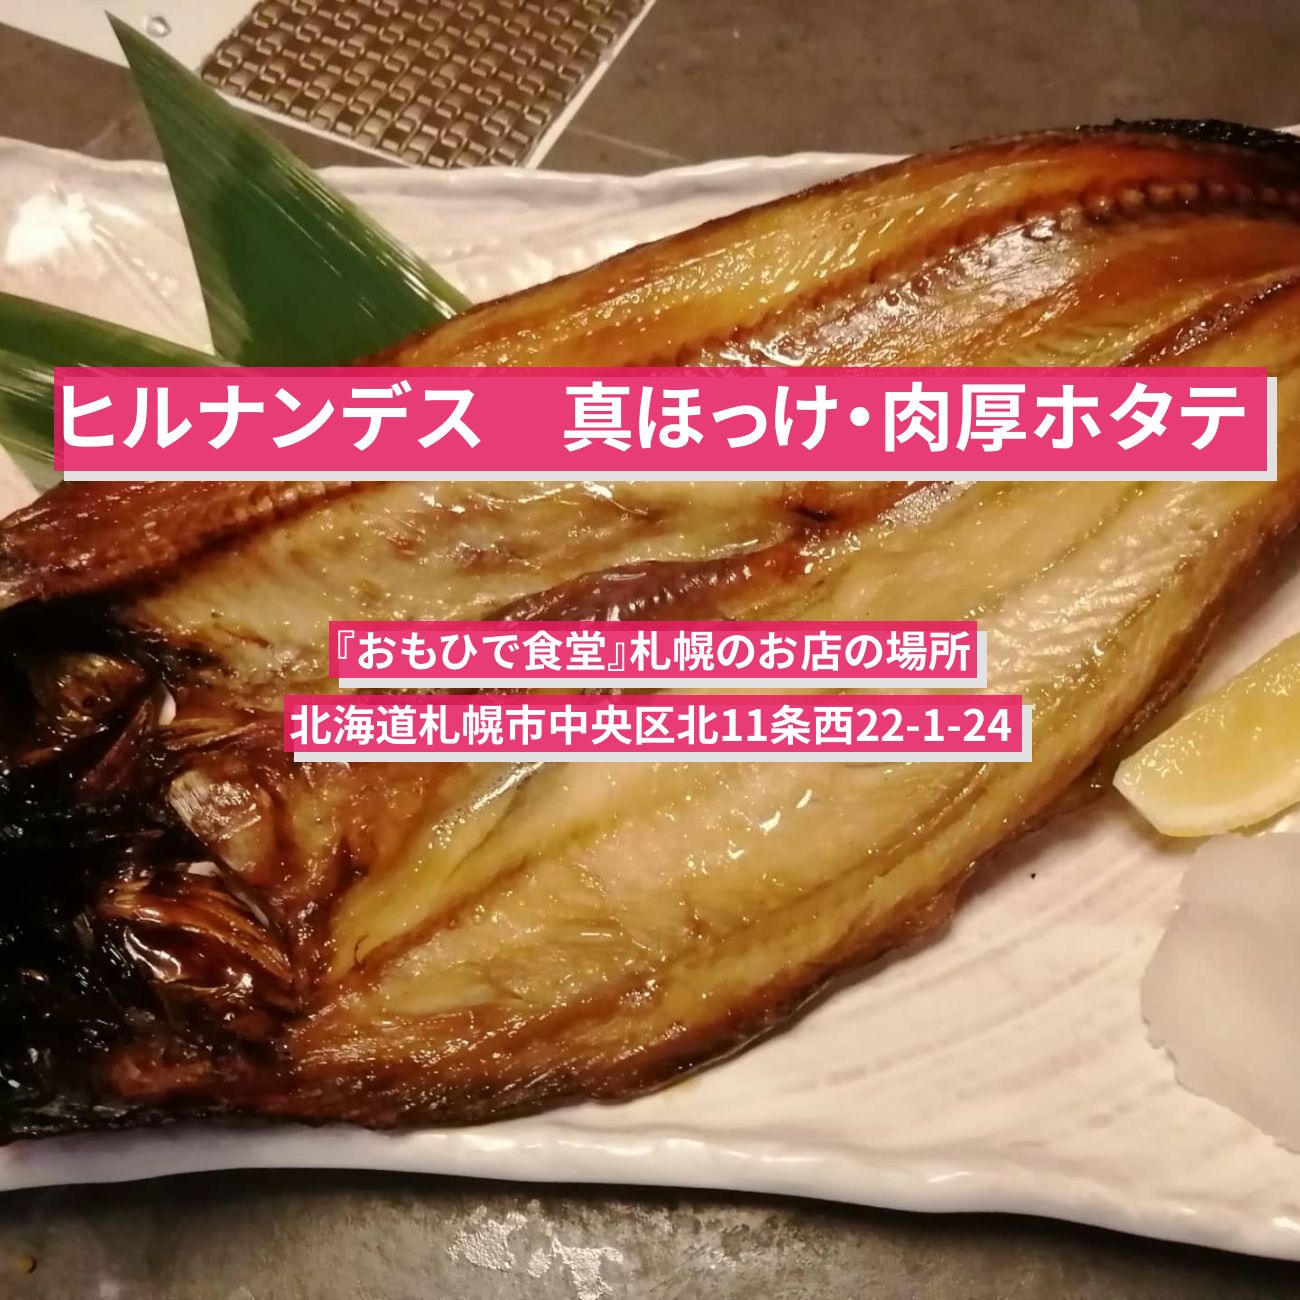 【ヒルナンデス】札幌市場の真ほっけ・ホタテ味噌焼き『おもひで食堂』のお店の場所〔久本雅美〕